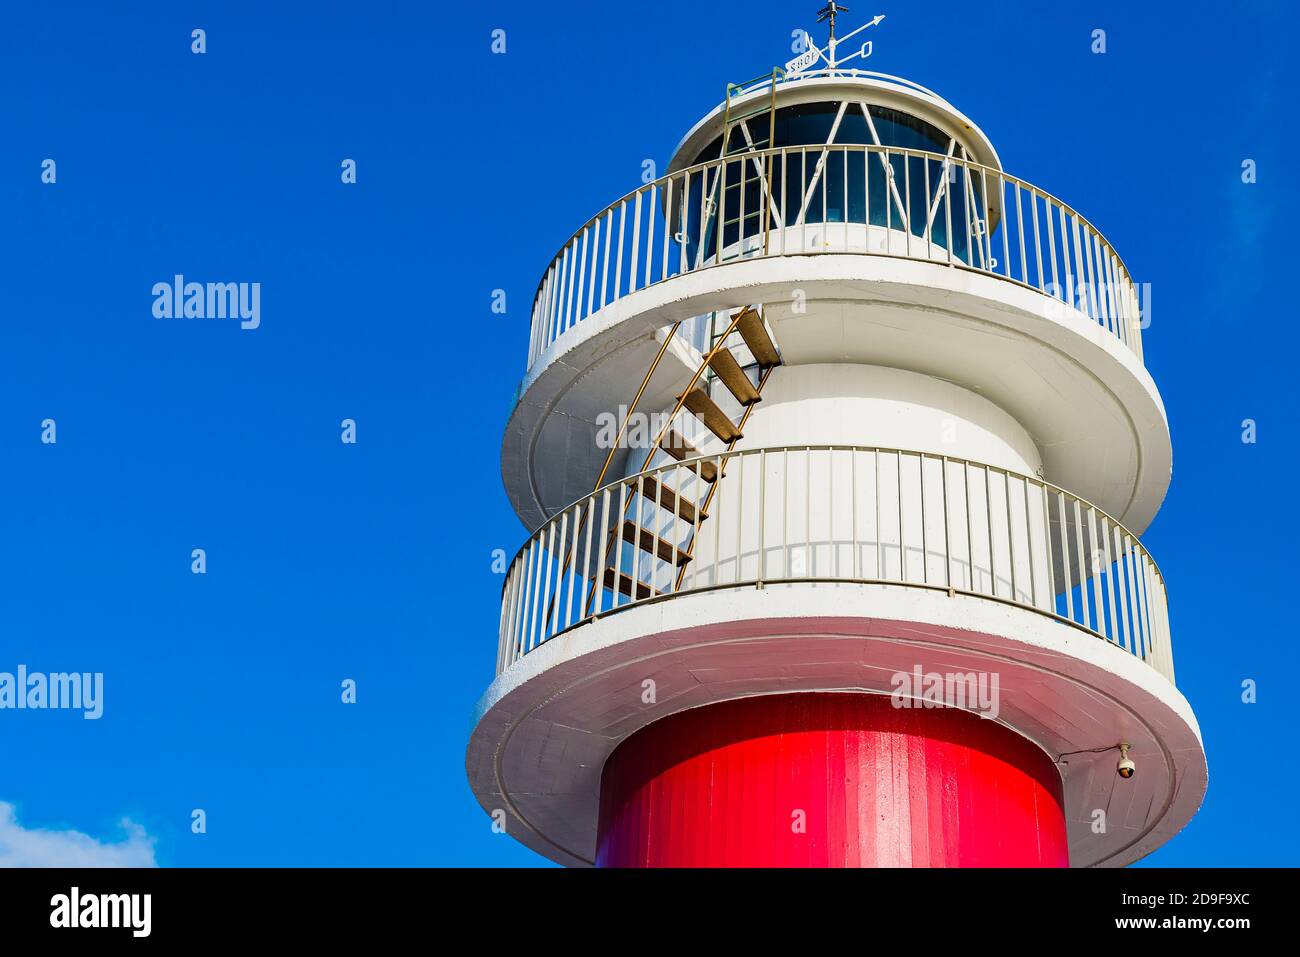 Cape Ortegal Lighthouse. Kap Ortegal ist ein Kap an der spanischen Atlantikküste, in der Gemeinde Cariño, in der Provinz La Coruña Stockfoto